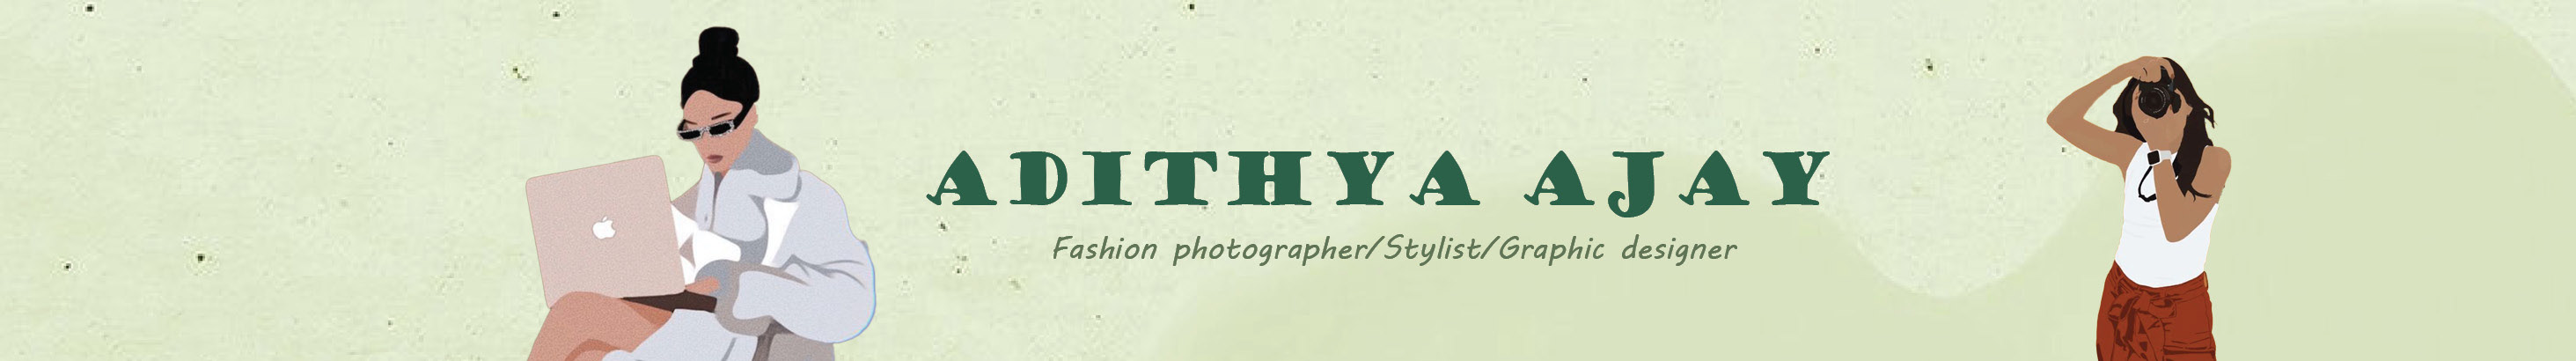 Profil-Banner von Adithya Ajay